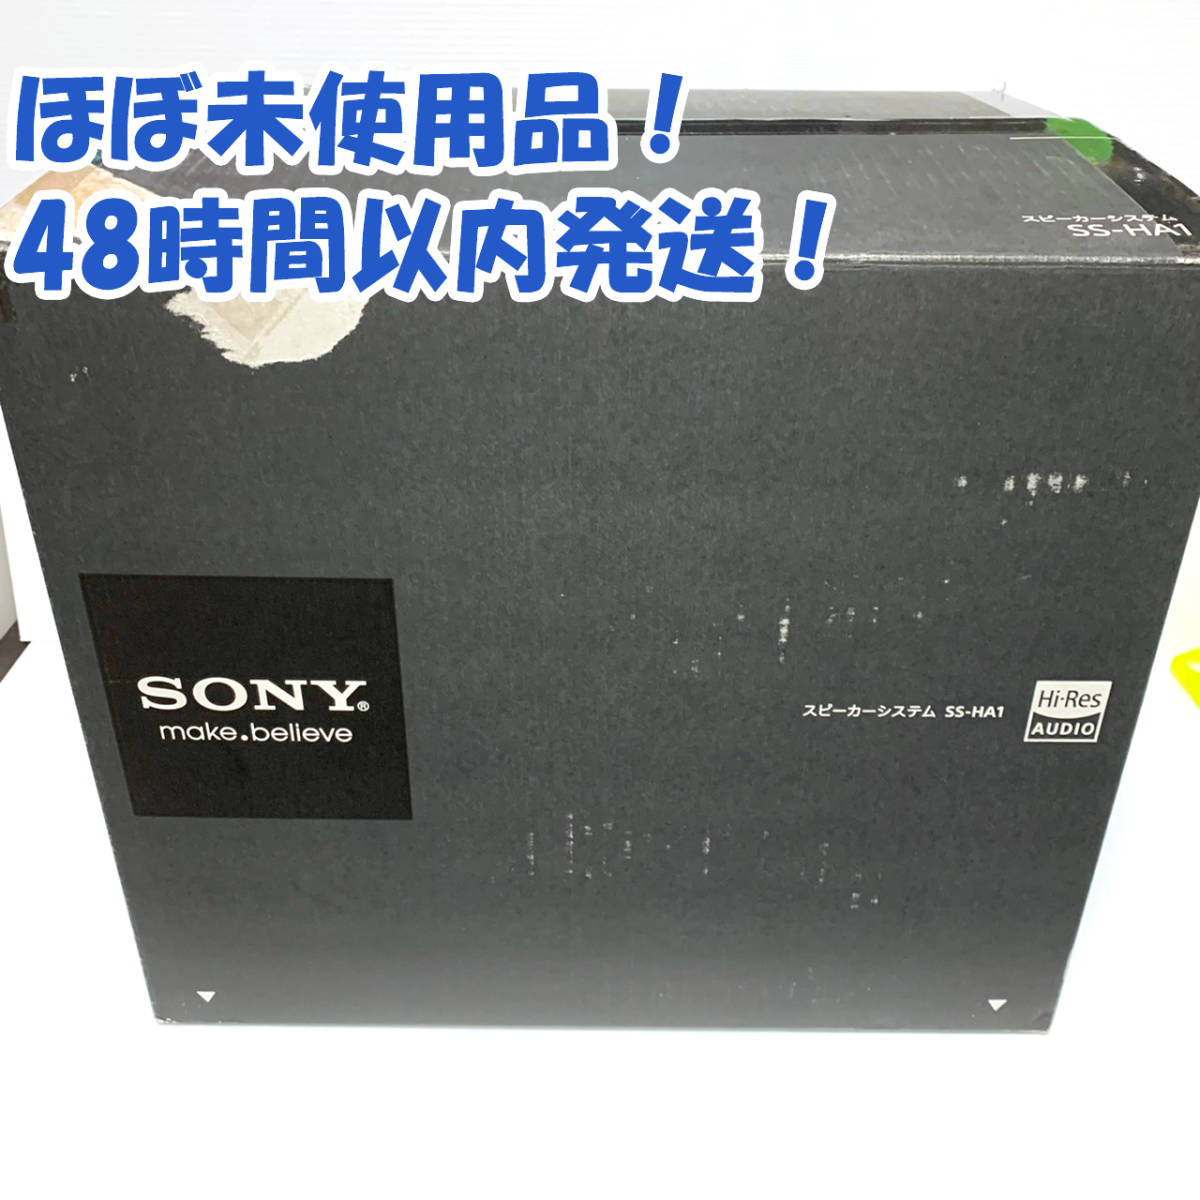 ソニー SONY スピーカーシステム (2台1組) SS-HA1 ハイレゾ対応 シルバー S 値下げ幅 テレビ、オーディオ、カメラ 